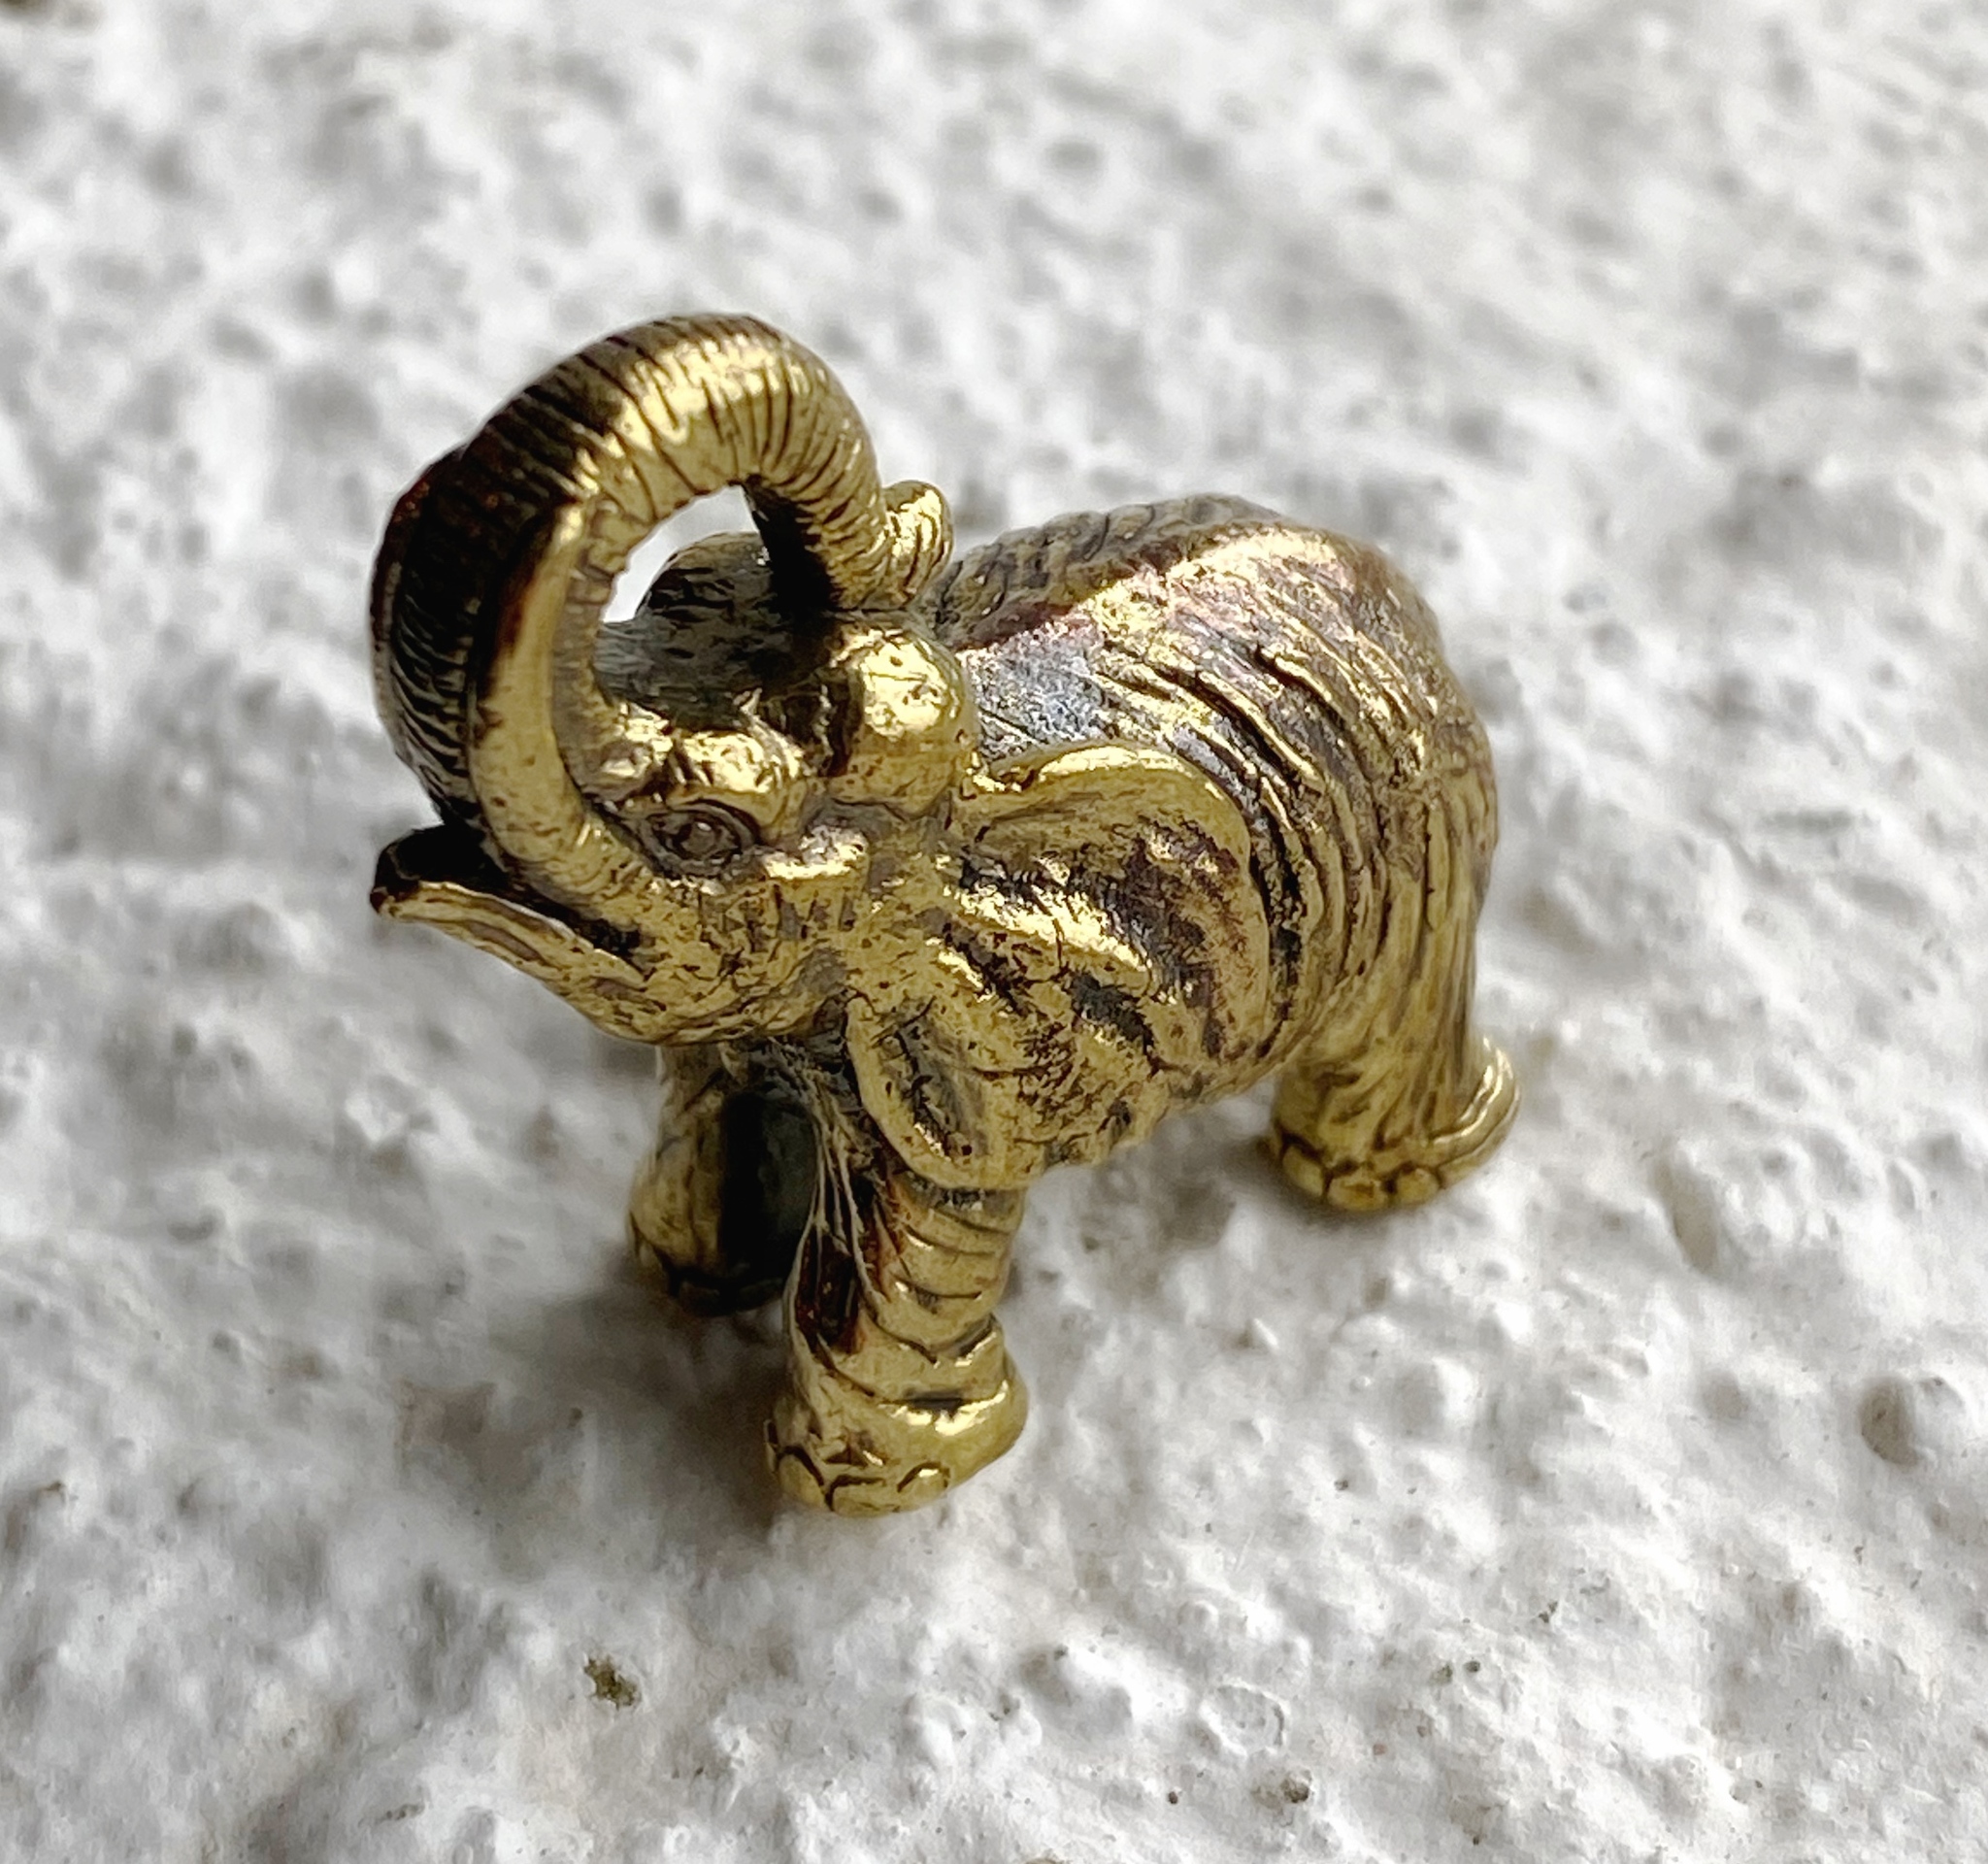 Liten elefant i brons